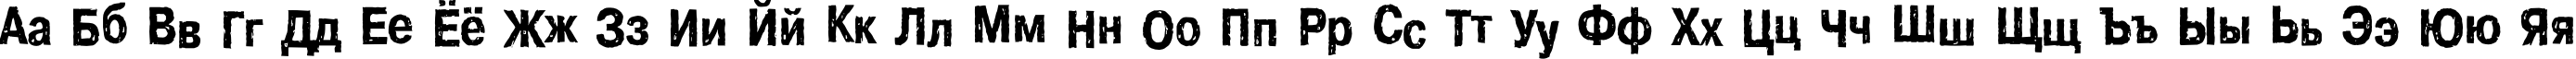 Пример написания русского алфавита шрифтом Crash